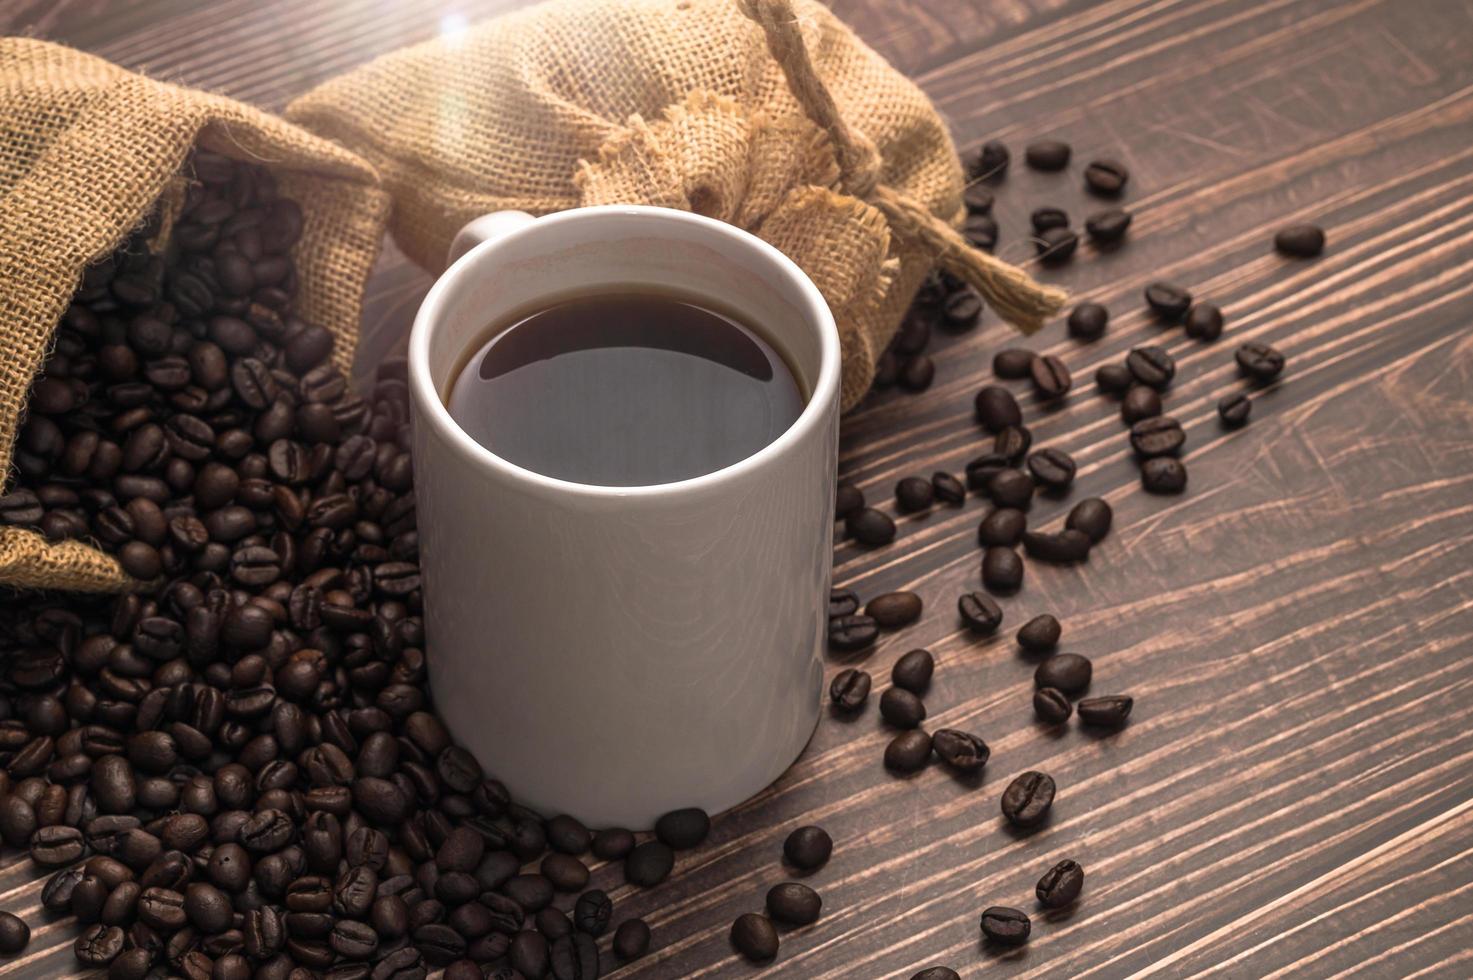 adore boire du café, des tasses à café et des grains de café sur la table photo